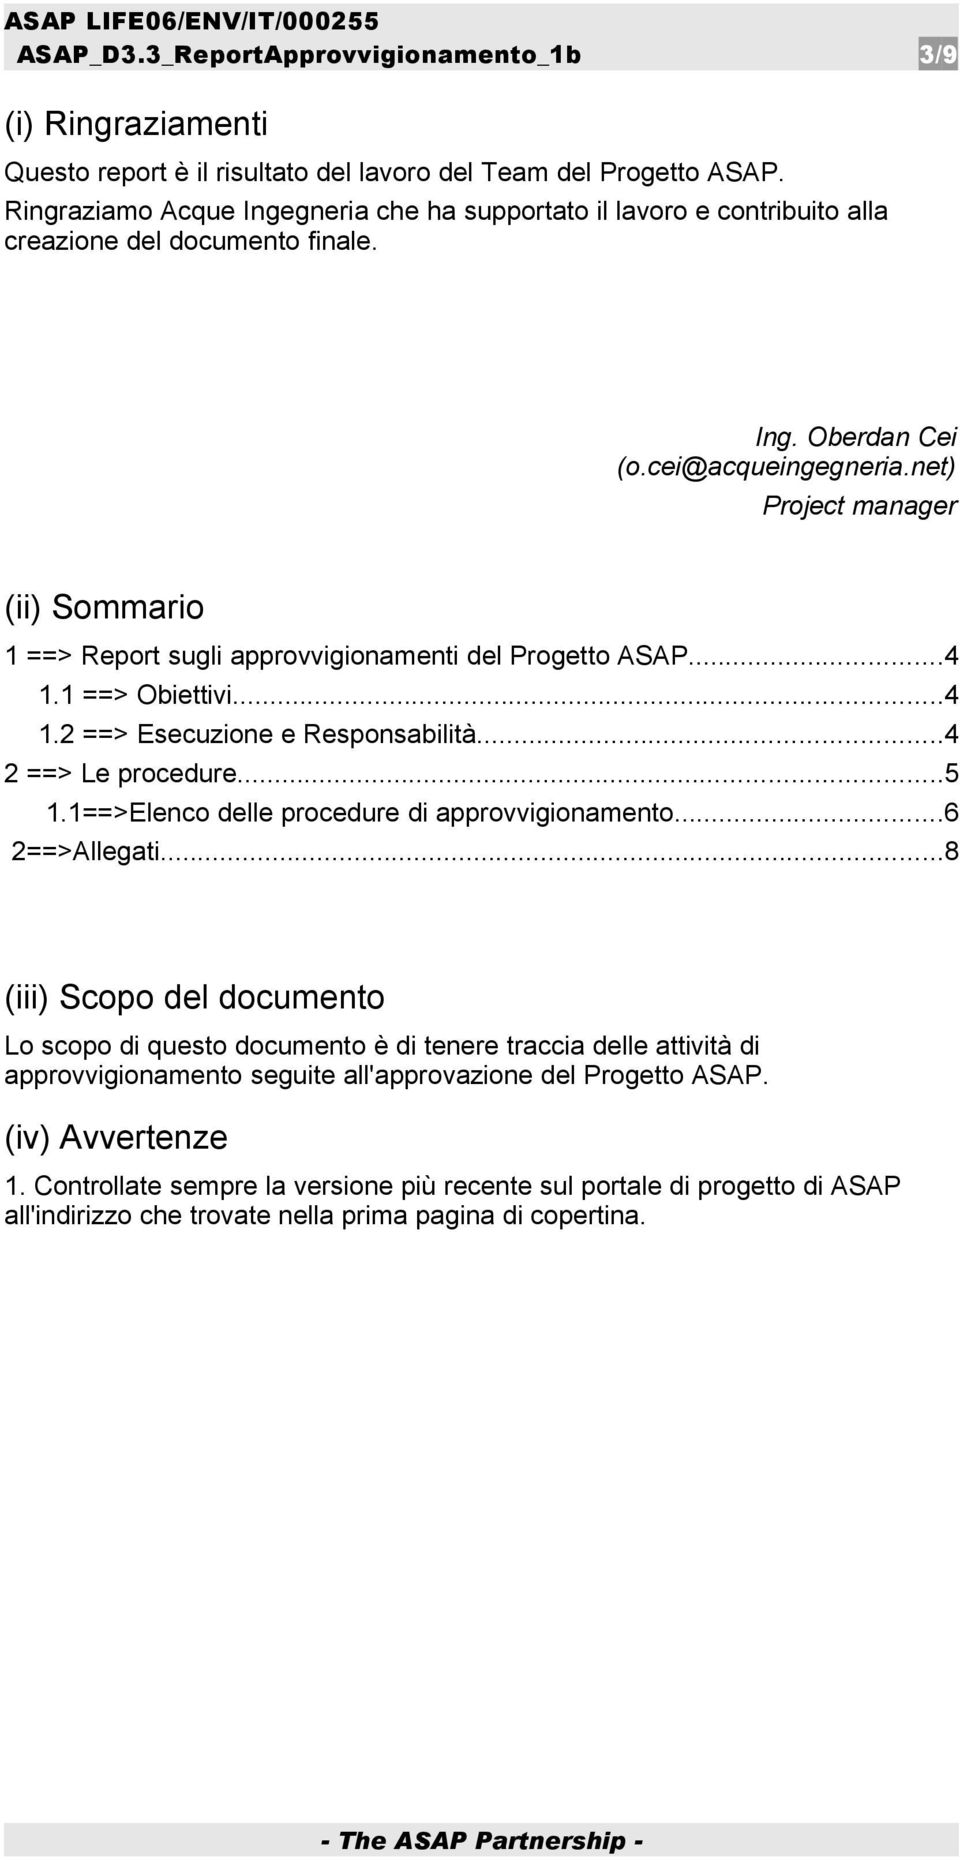 net) Project manager (ii) Sommario 1 ==> Report sugli approvvigionamenti del Progetto ASAP...4 1.1 ==> Obiettivi...4 1.2 ==> Esecuzione e Responsabilità...4 2 ==> Le procedure...5 1.